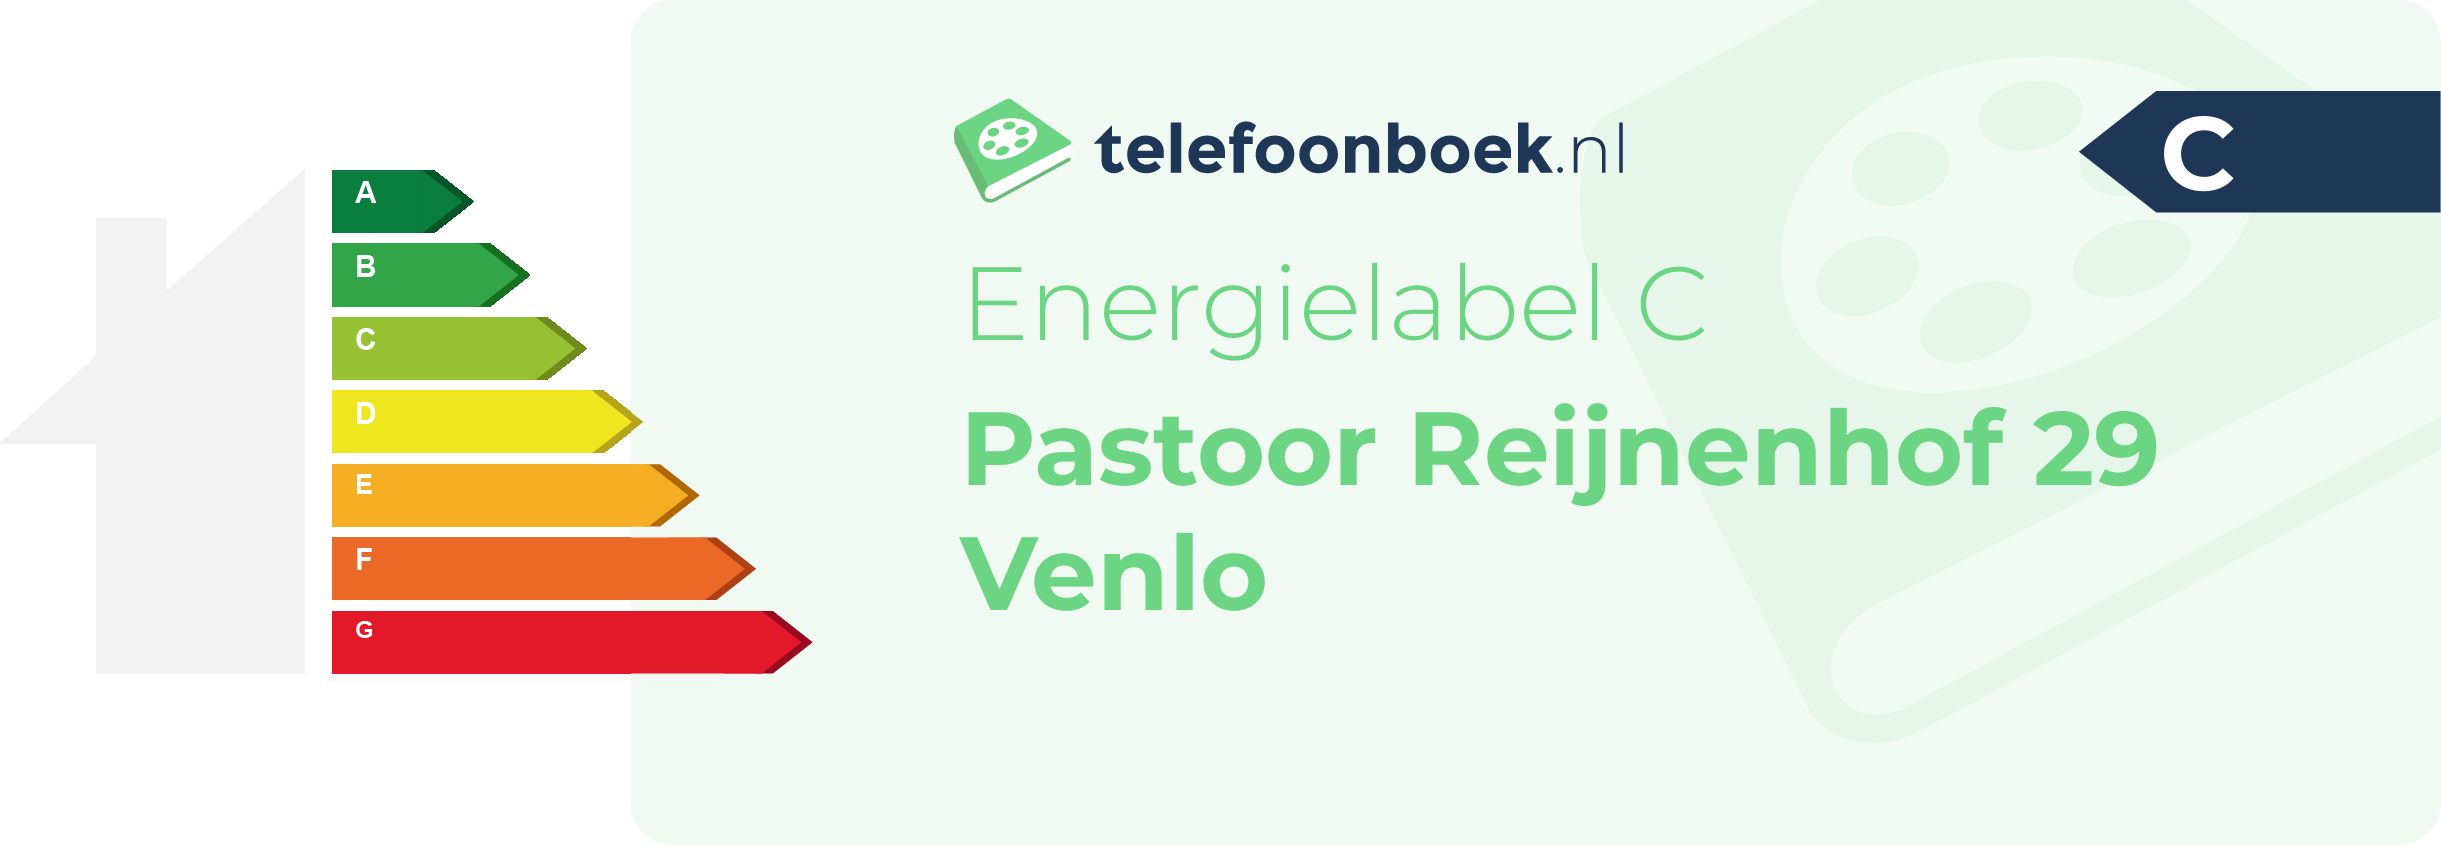 Energielabel Pastoor Reijnenhof 29 Venlo